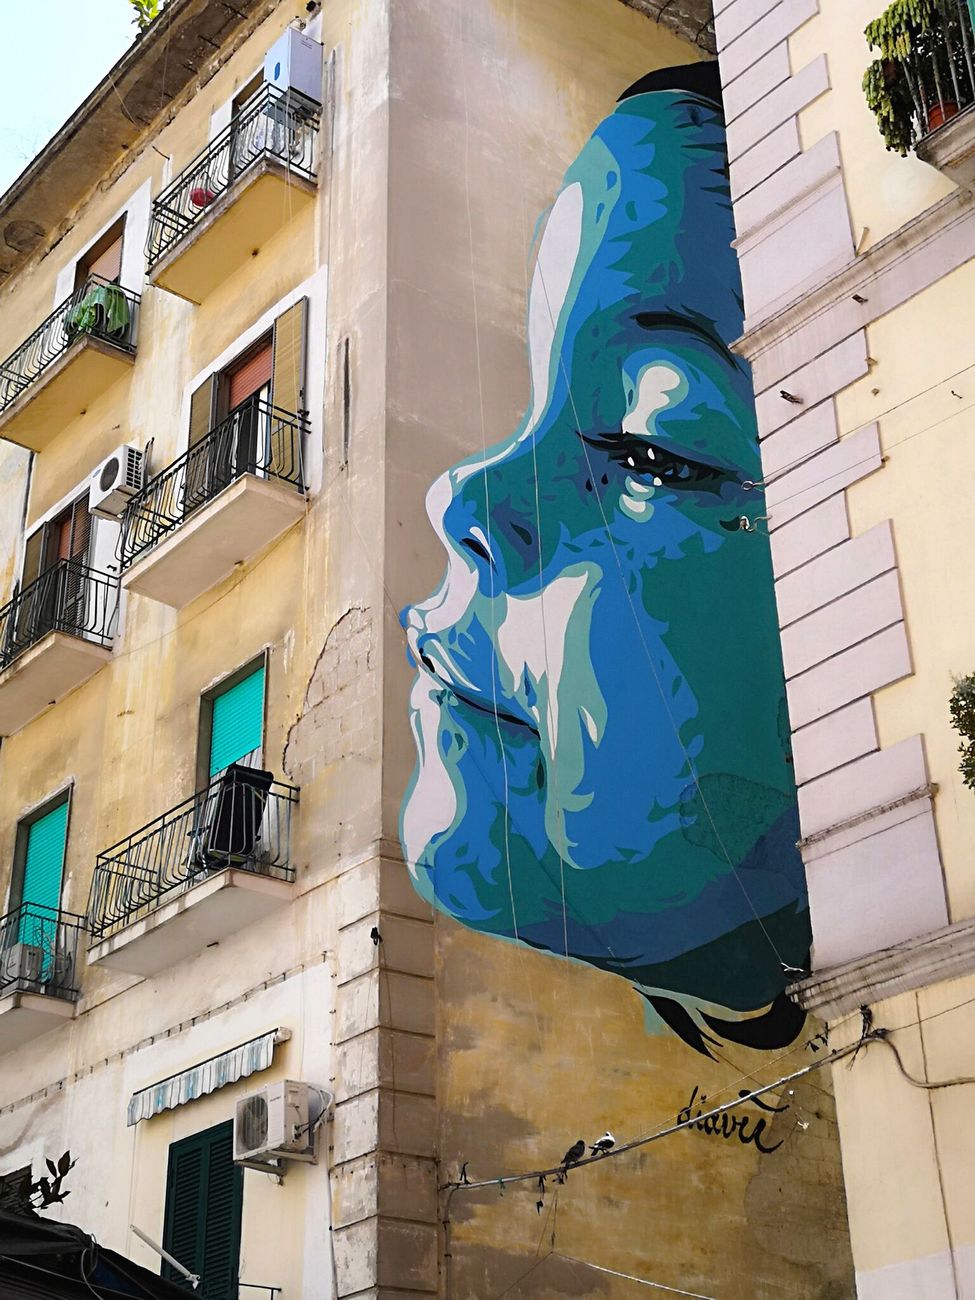 David Diavù Vecchiato, Cucù...Tetè, murale per Urban Neapolis, Piazza Pignasecca, Napoli, 2018